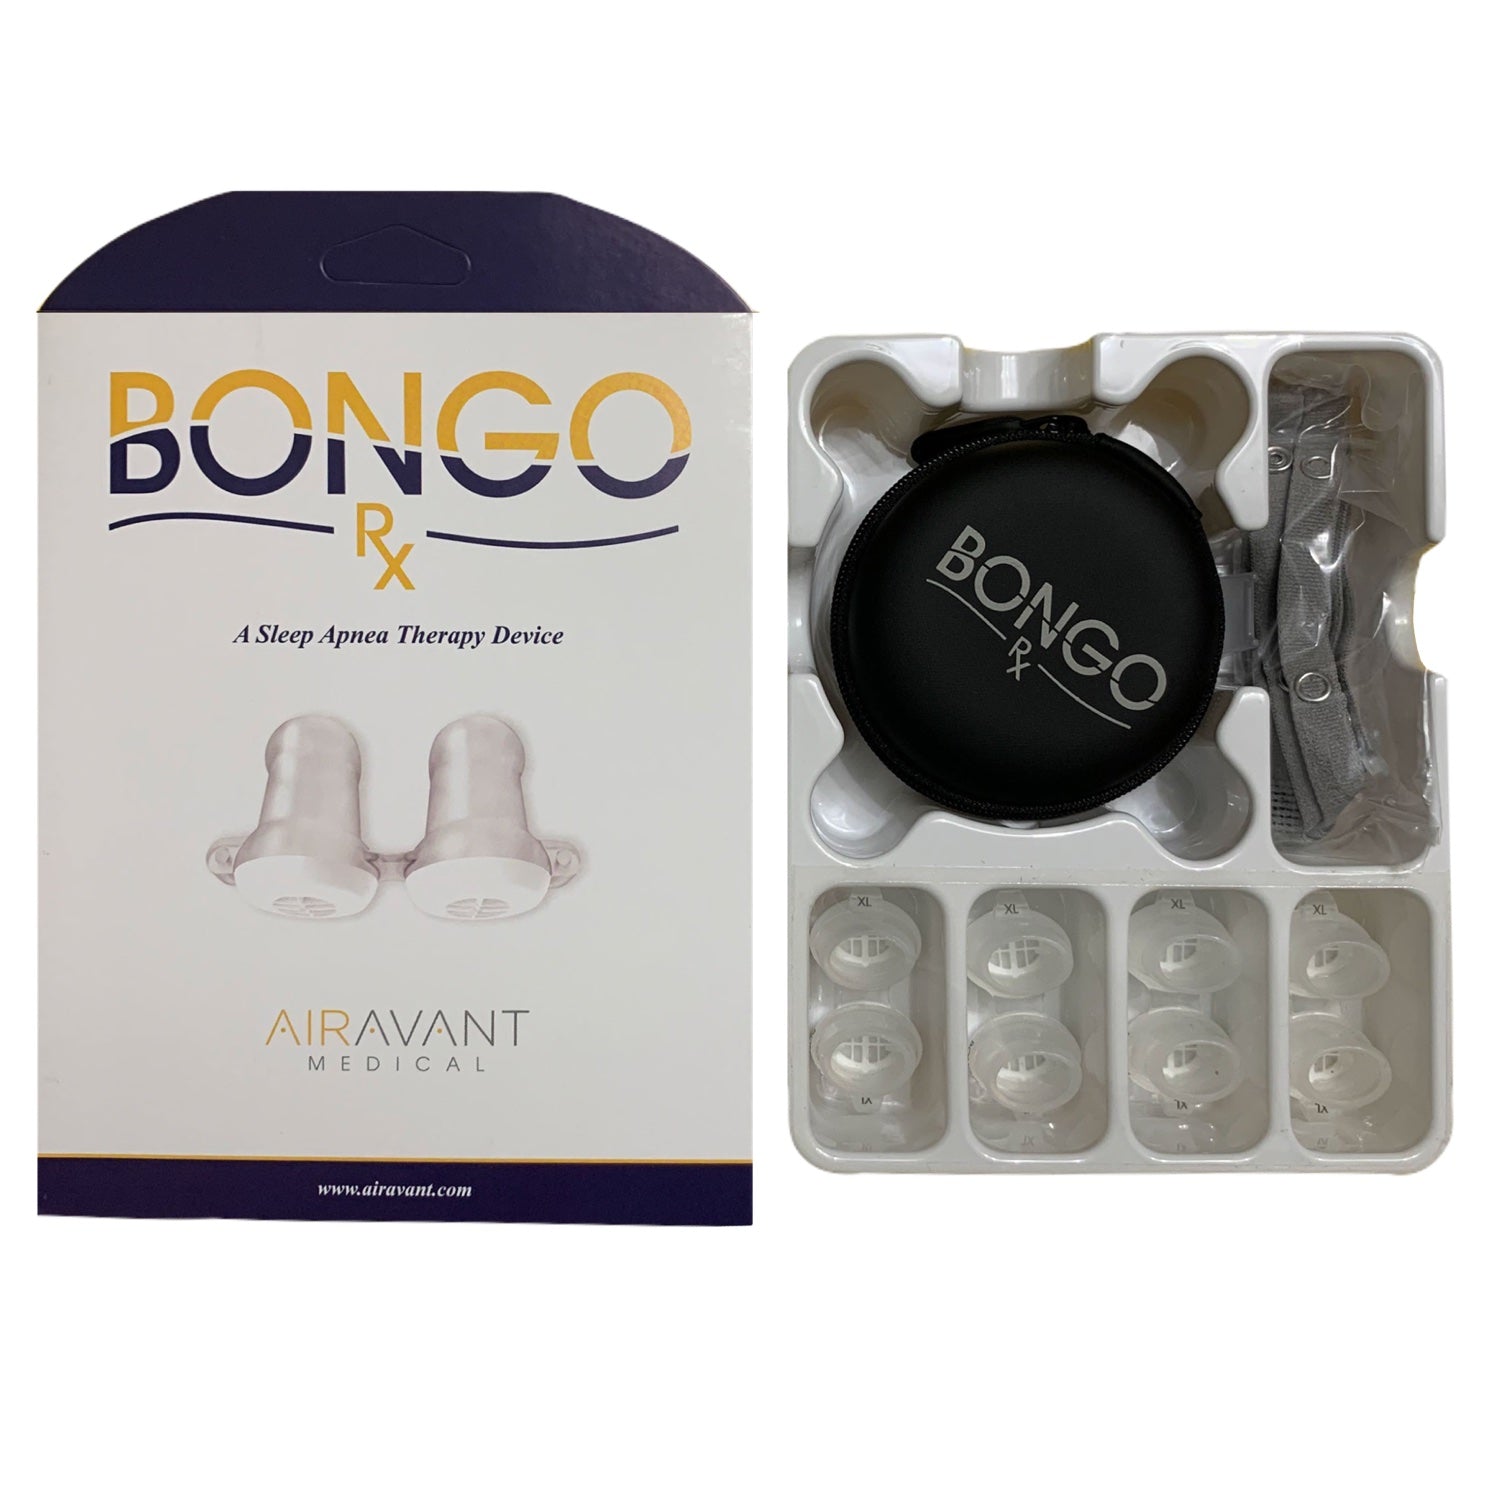 Replenishment Pack Bongo Rx size XL - 4 sets